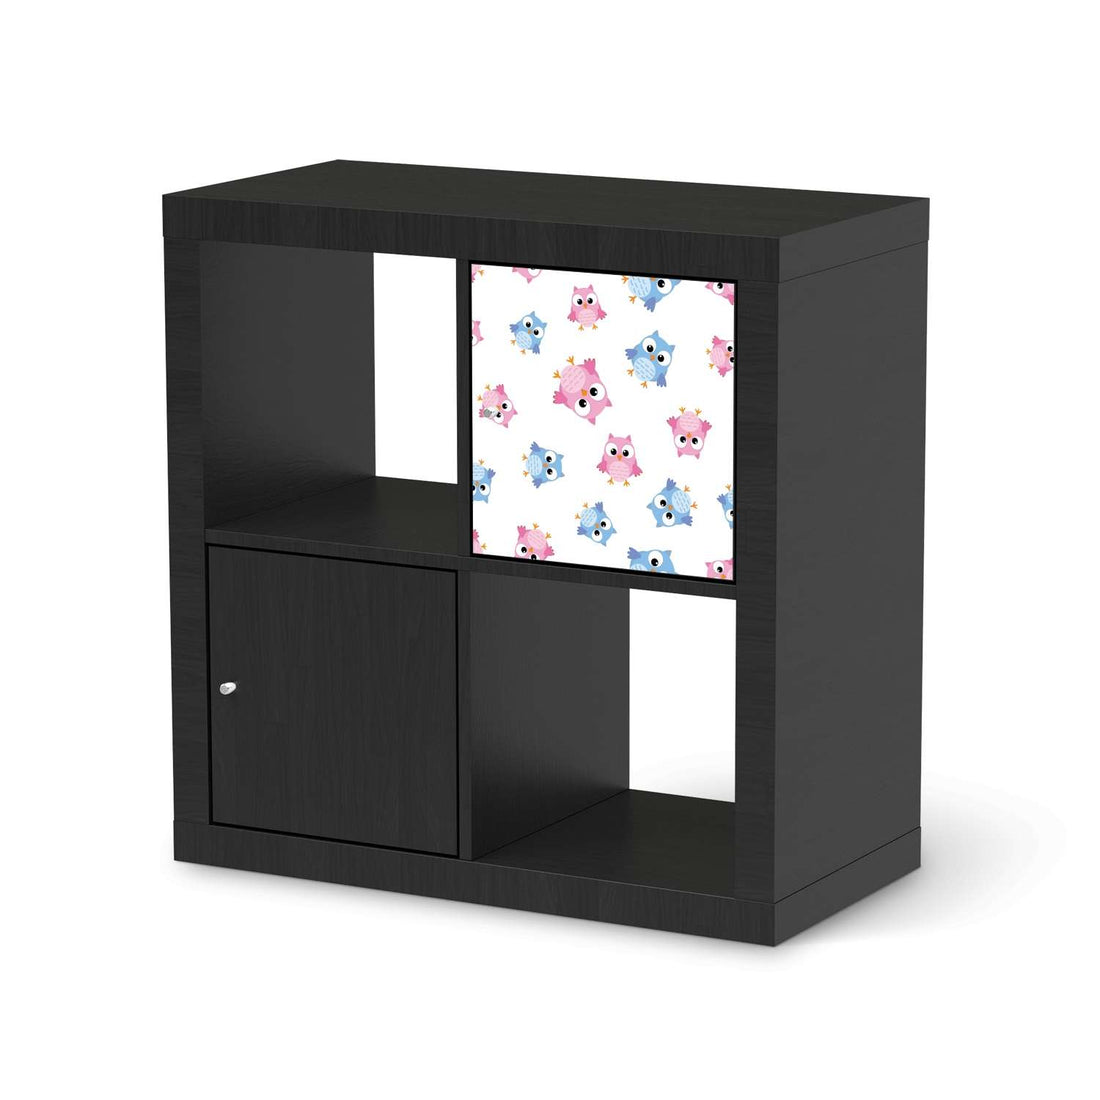 Selbstklebende Folie Eulenparty - IKEA Kallax Regal 1 Türe - schwarz